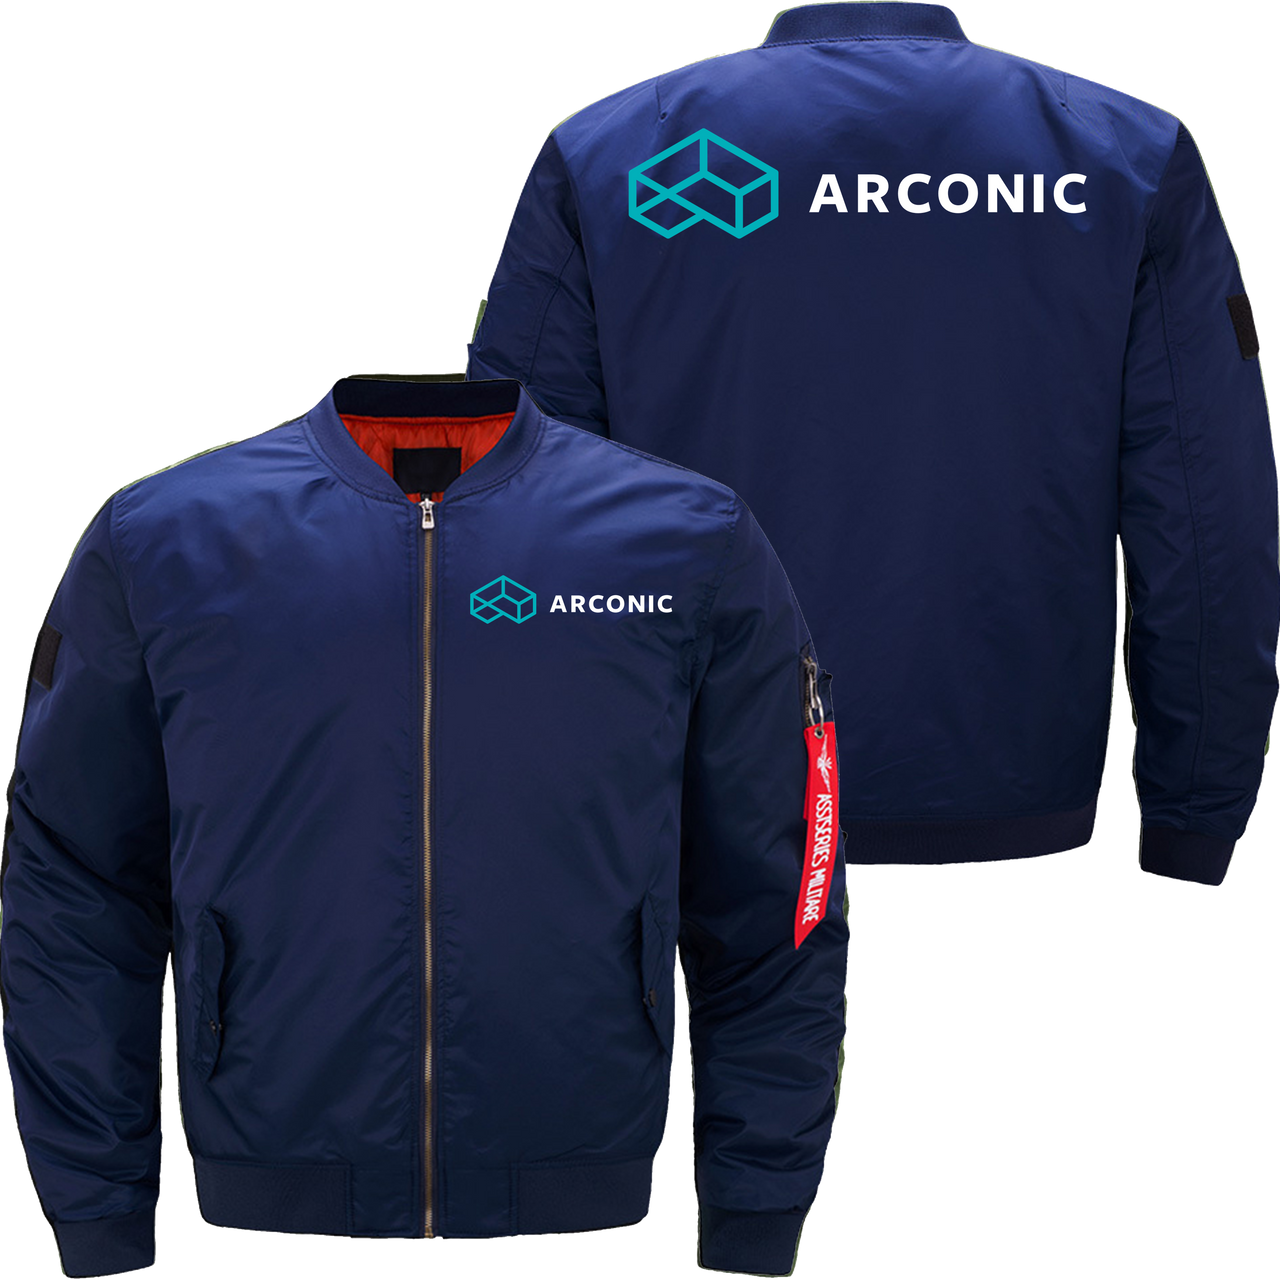 Aronic Jacket